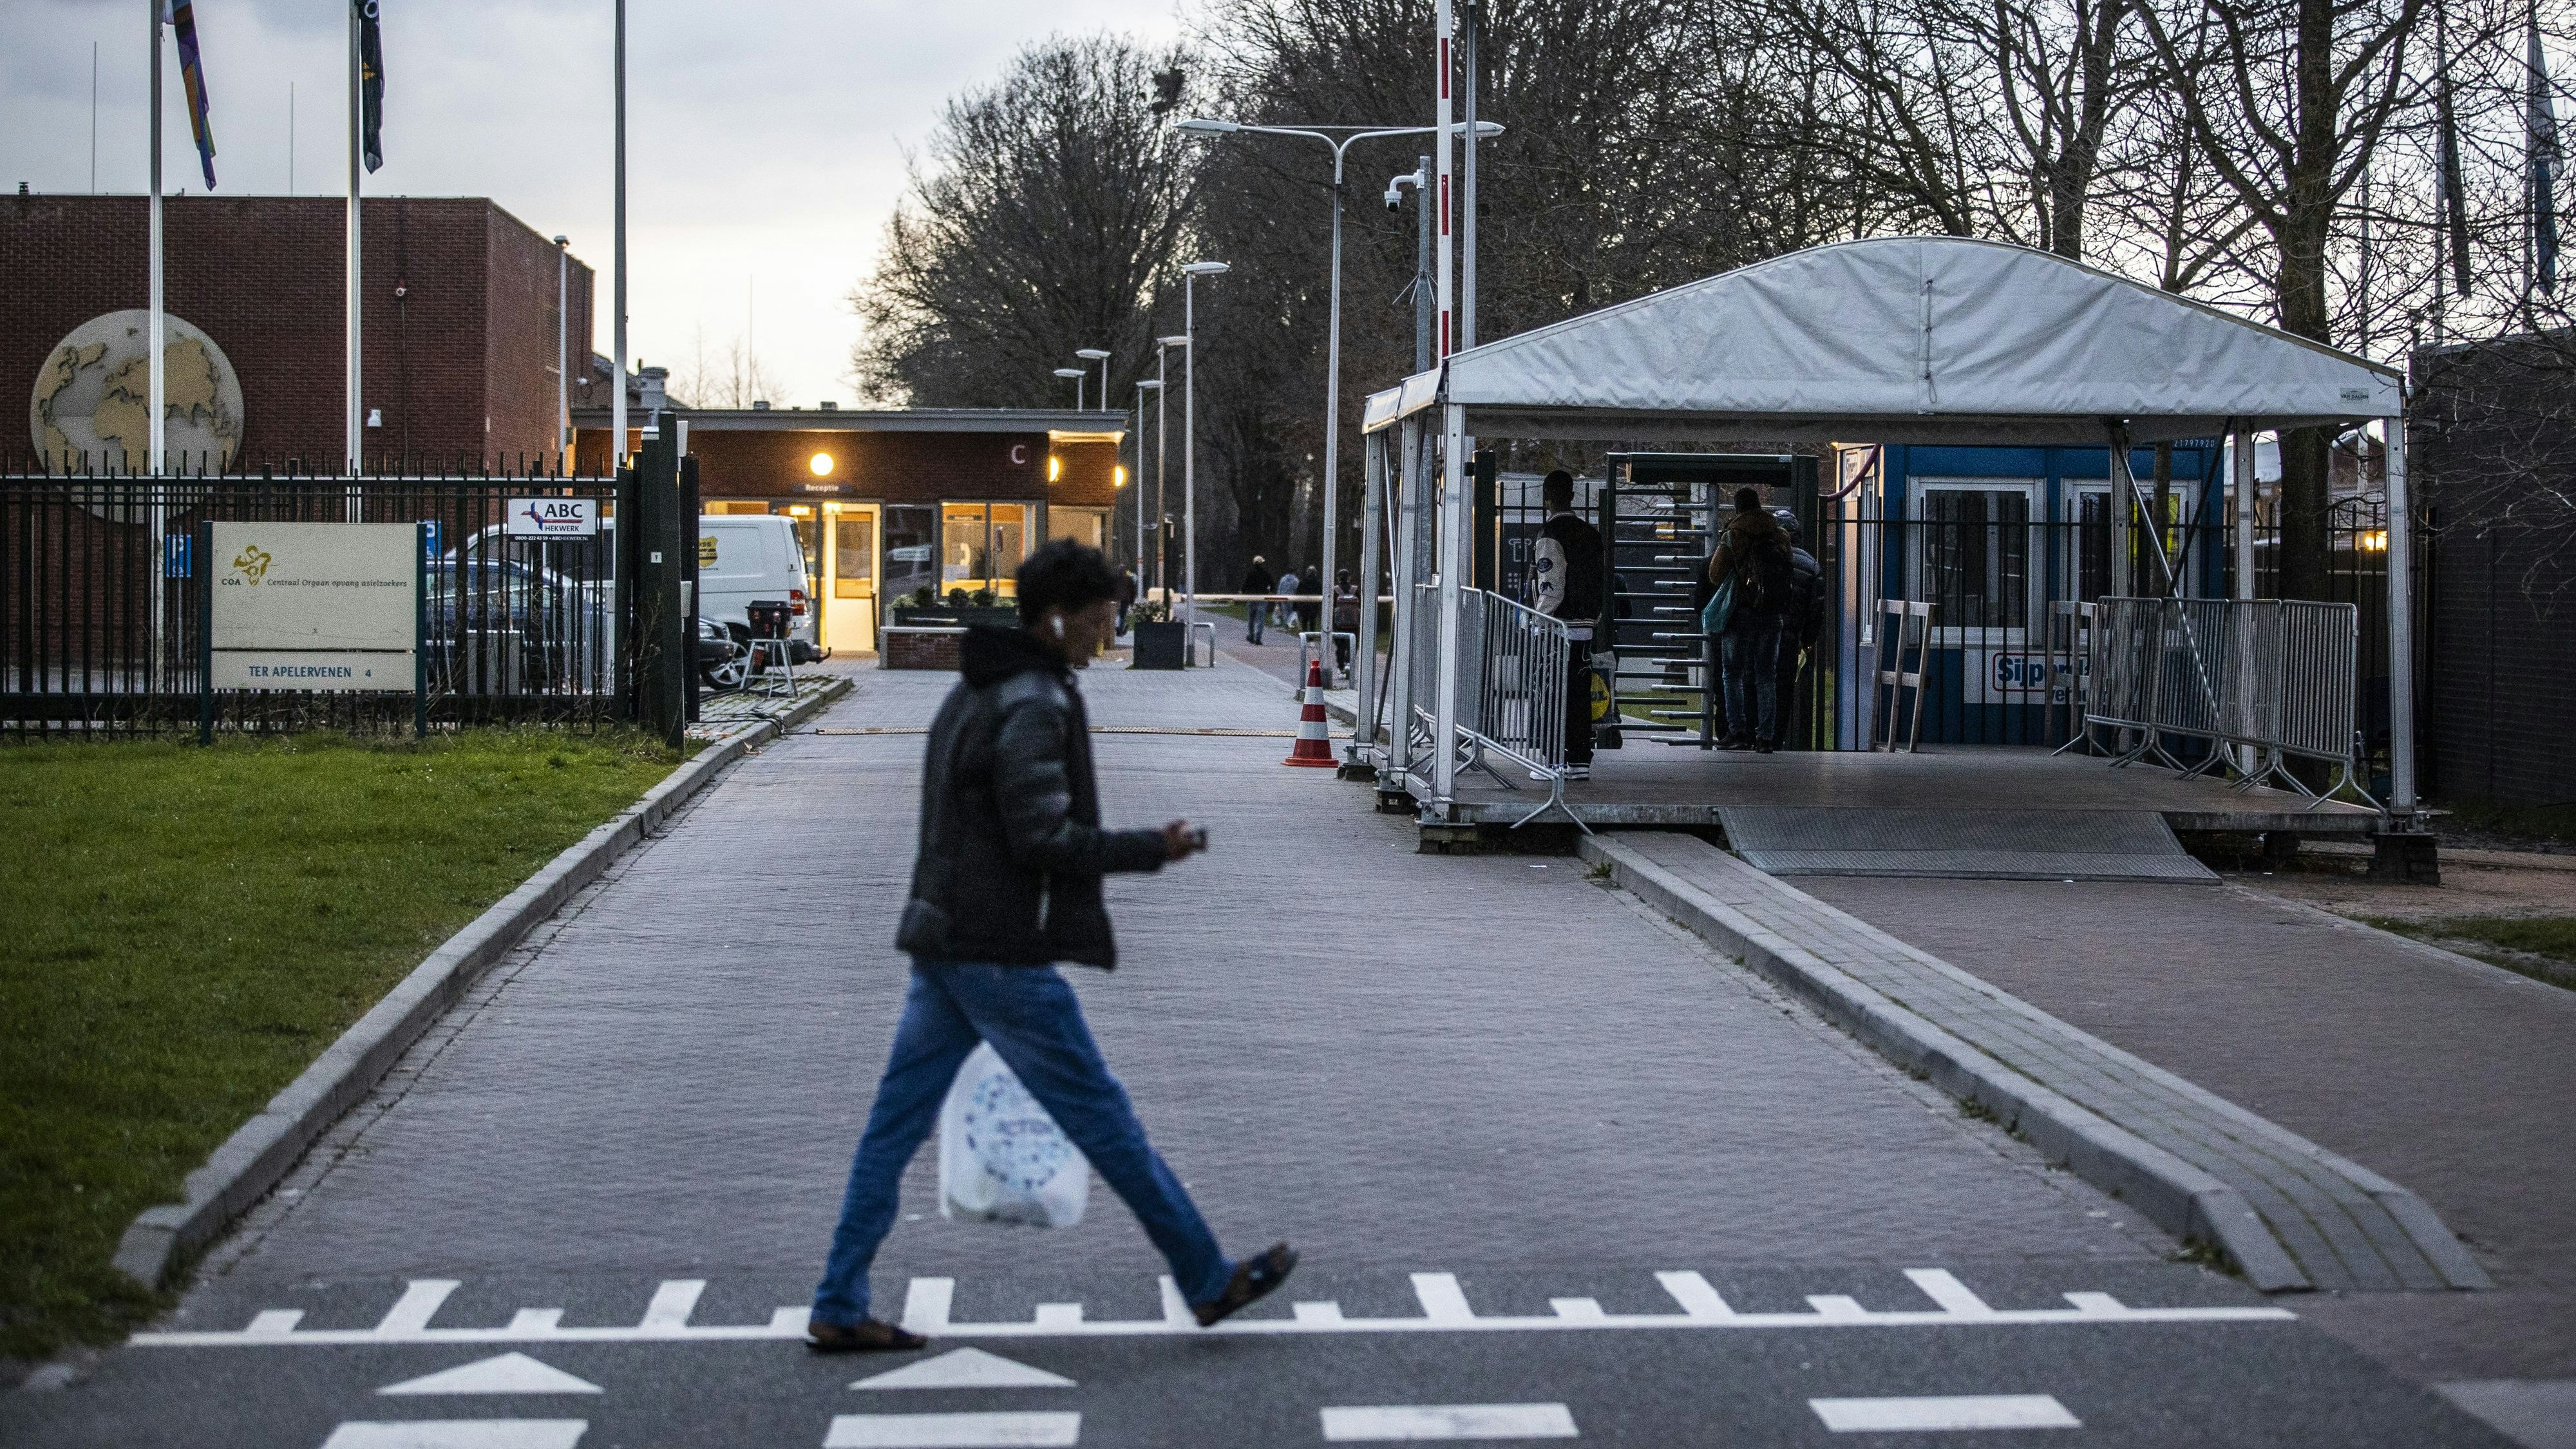 Das Flüchtlingslager in Ter Apel gilt mit 200 Insassen als größte derartige Einrichtung in den Niederlanden